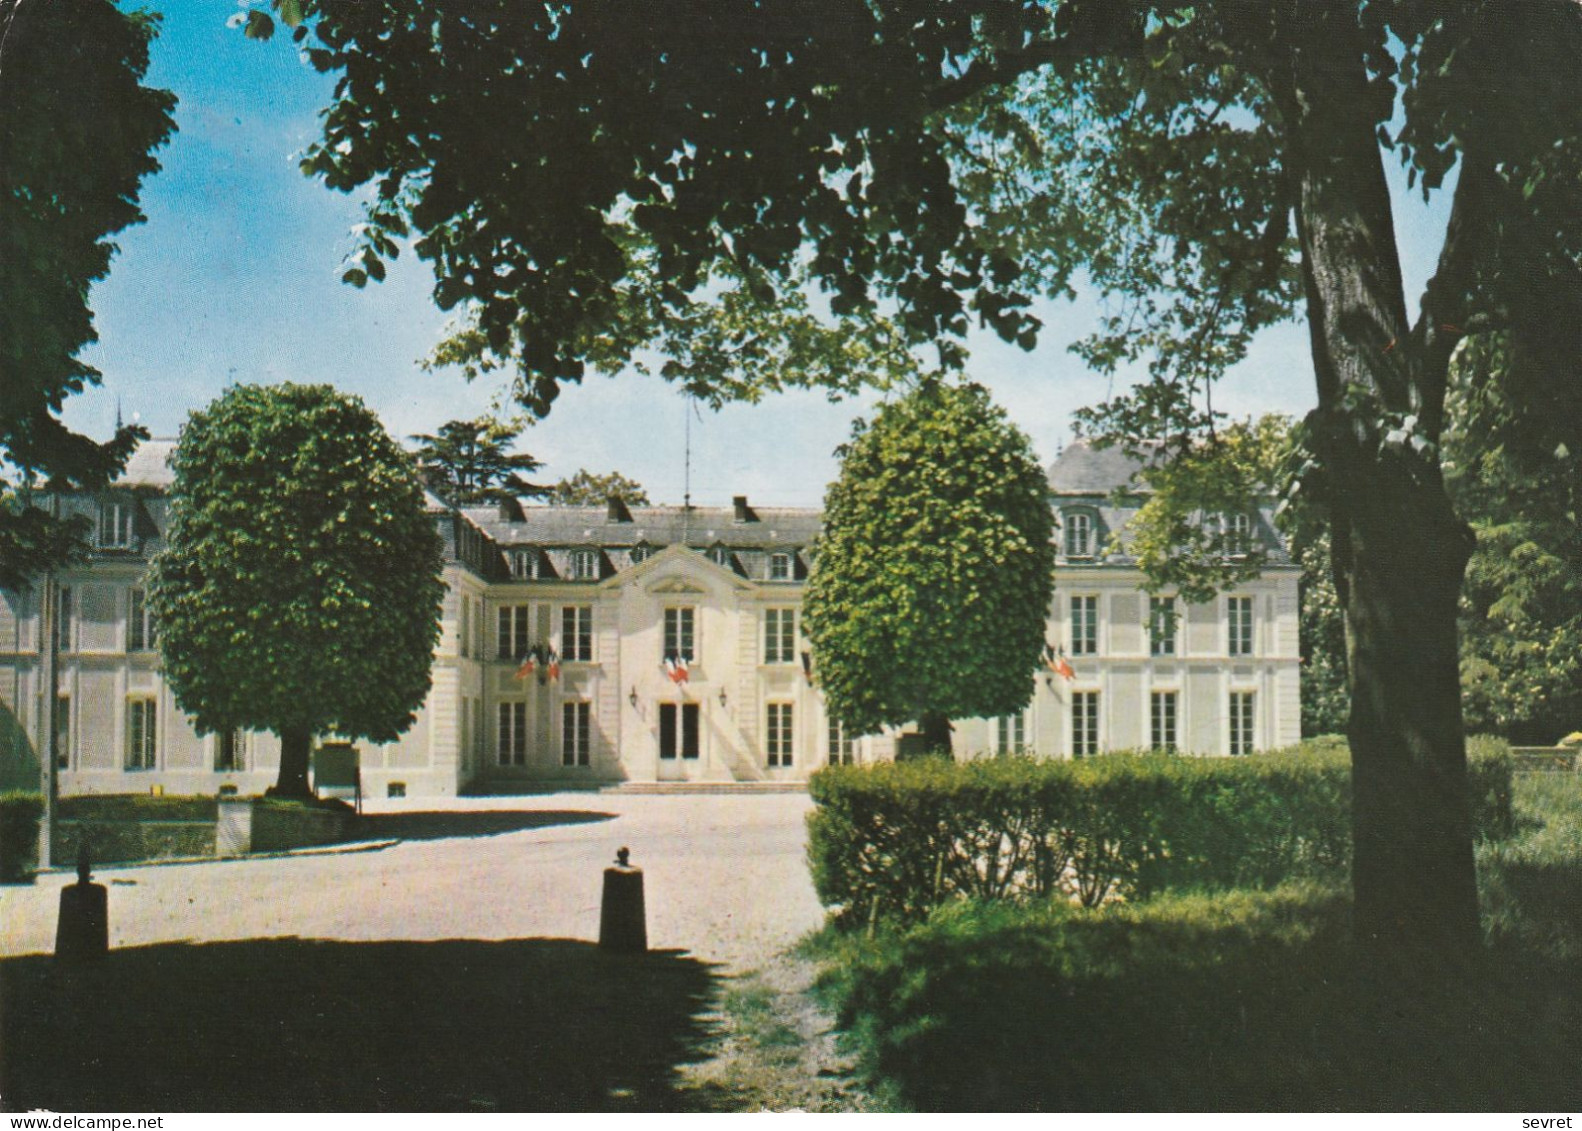 EPINAY SUR ORGE. - L'Hôtel De Ville.  CPM - Epinay-sur-Orge